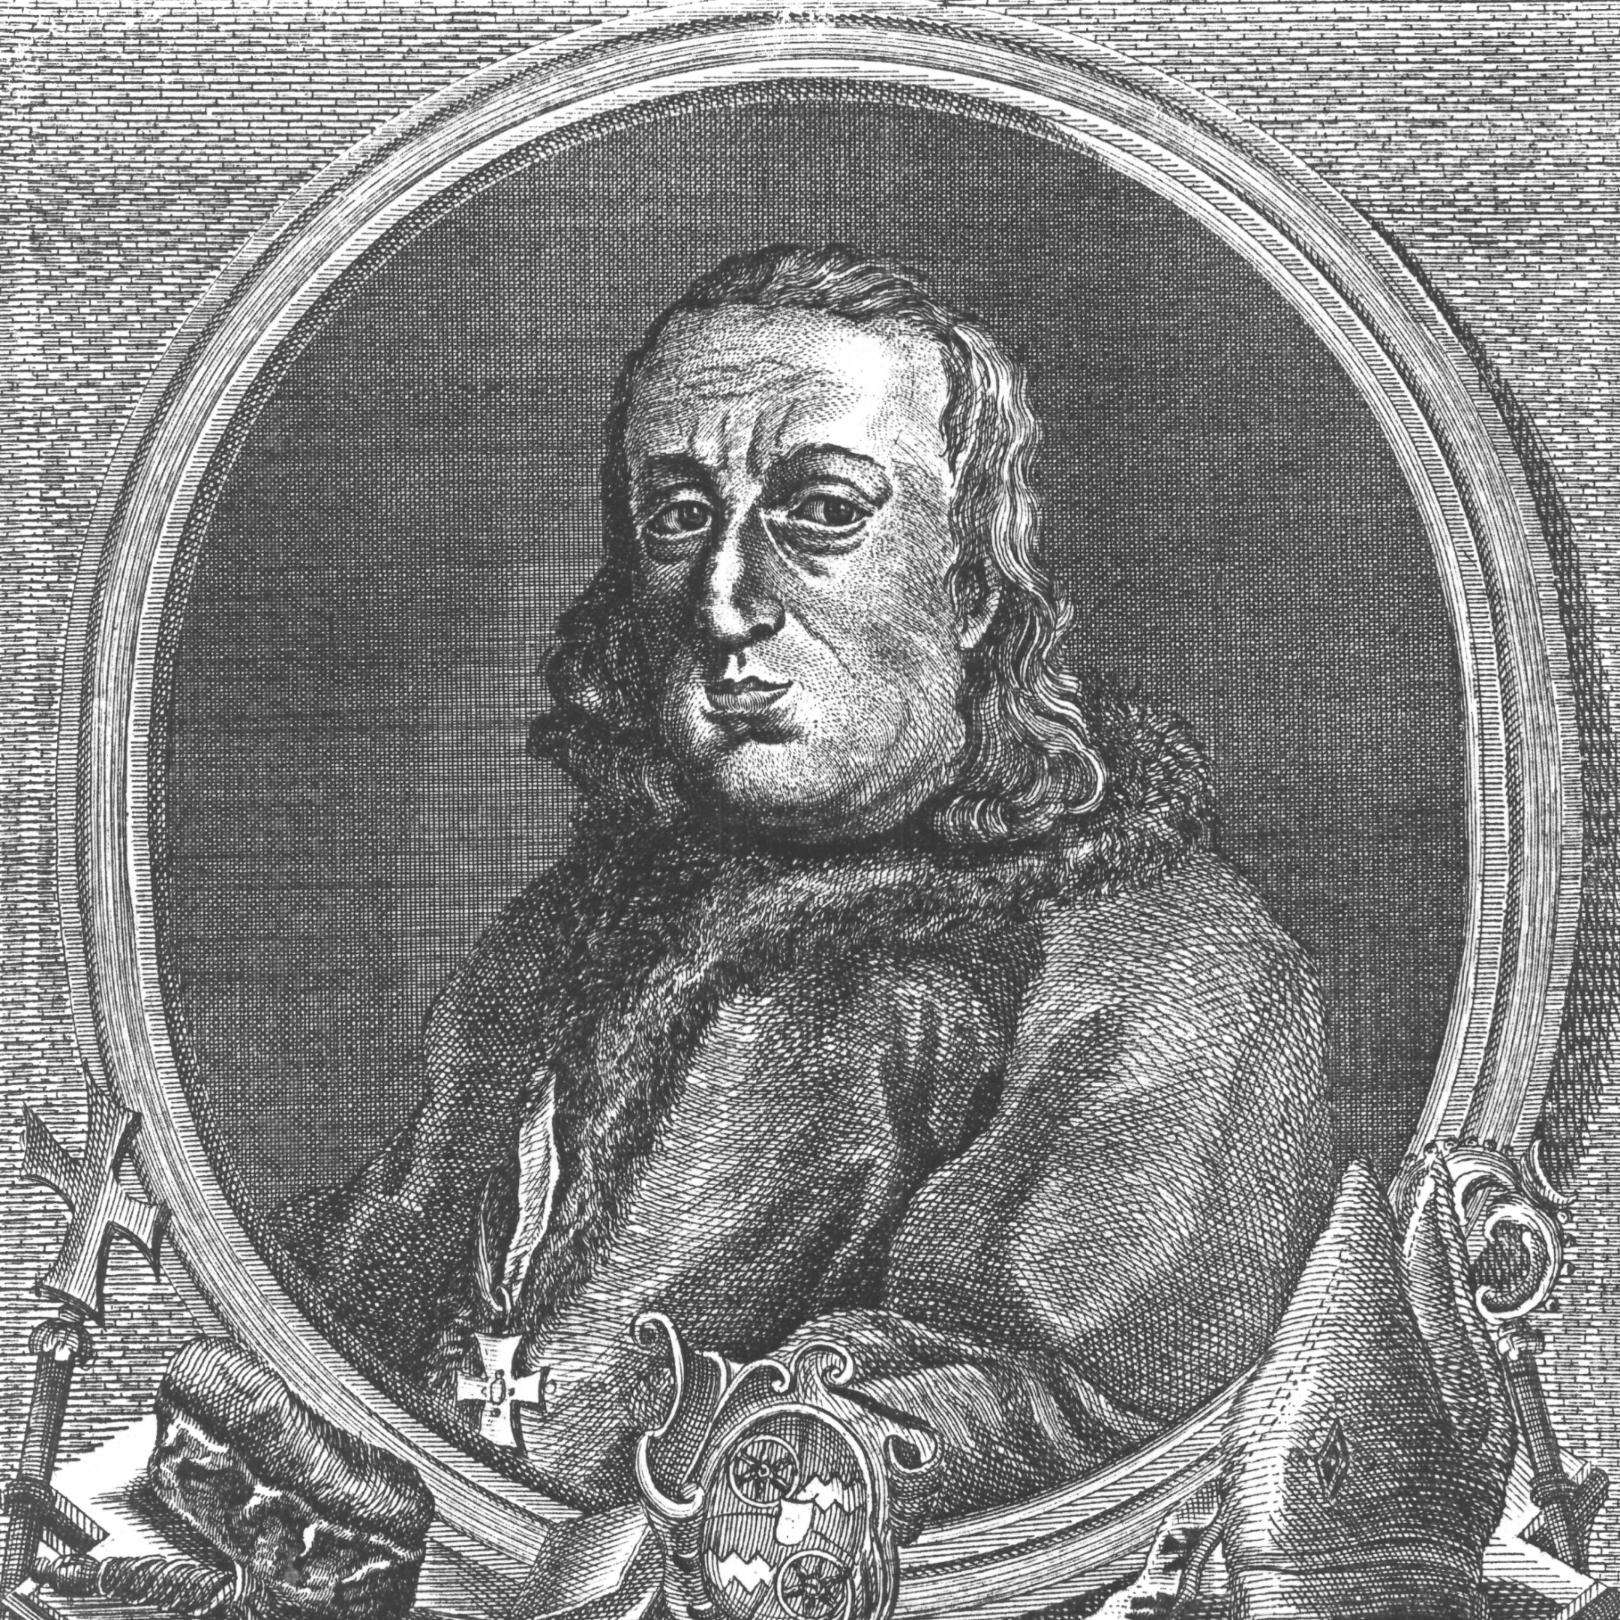 Konrad I von Wittelsbach, gezeichnet ca. 1774 (c) Wilhelm Christian Rücker / IMKG